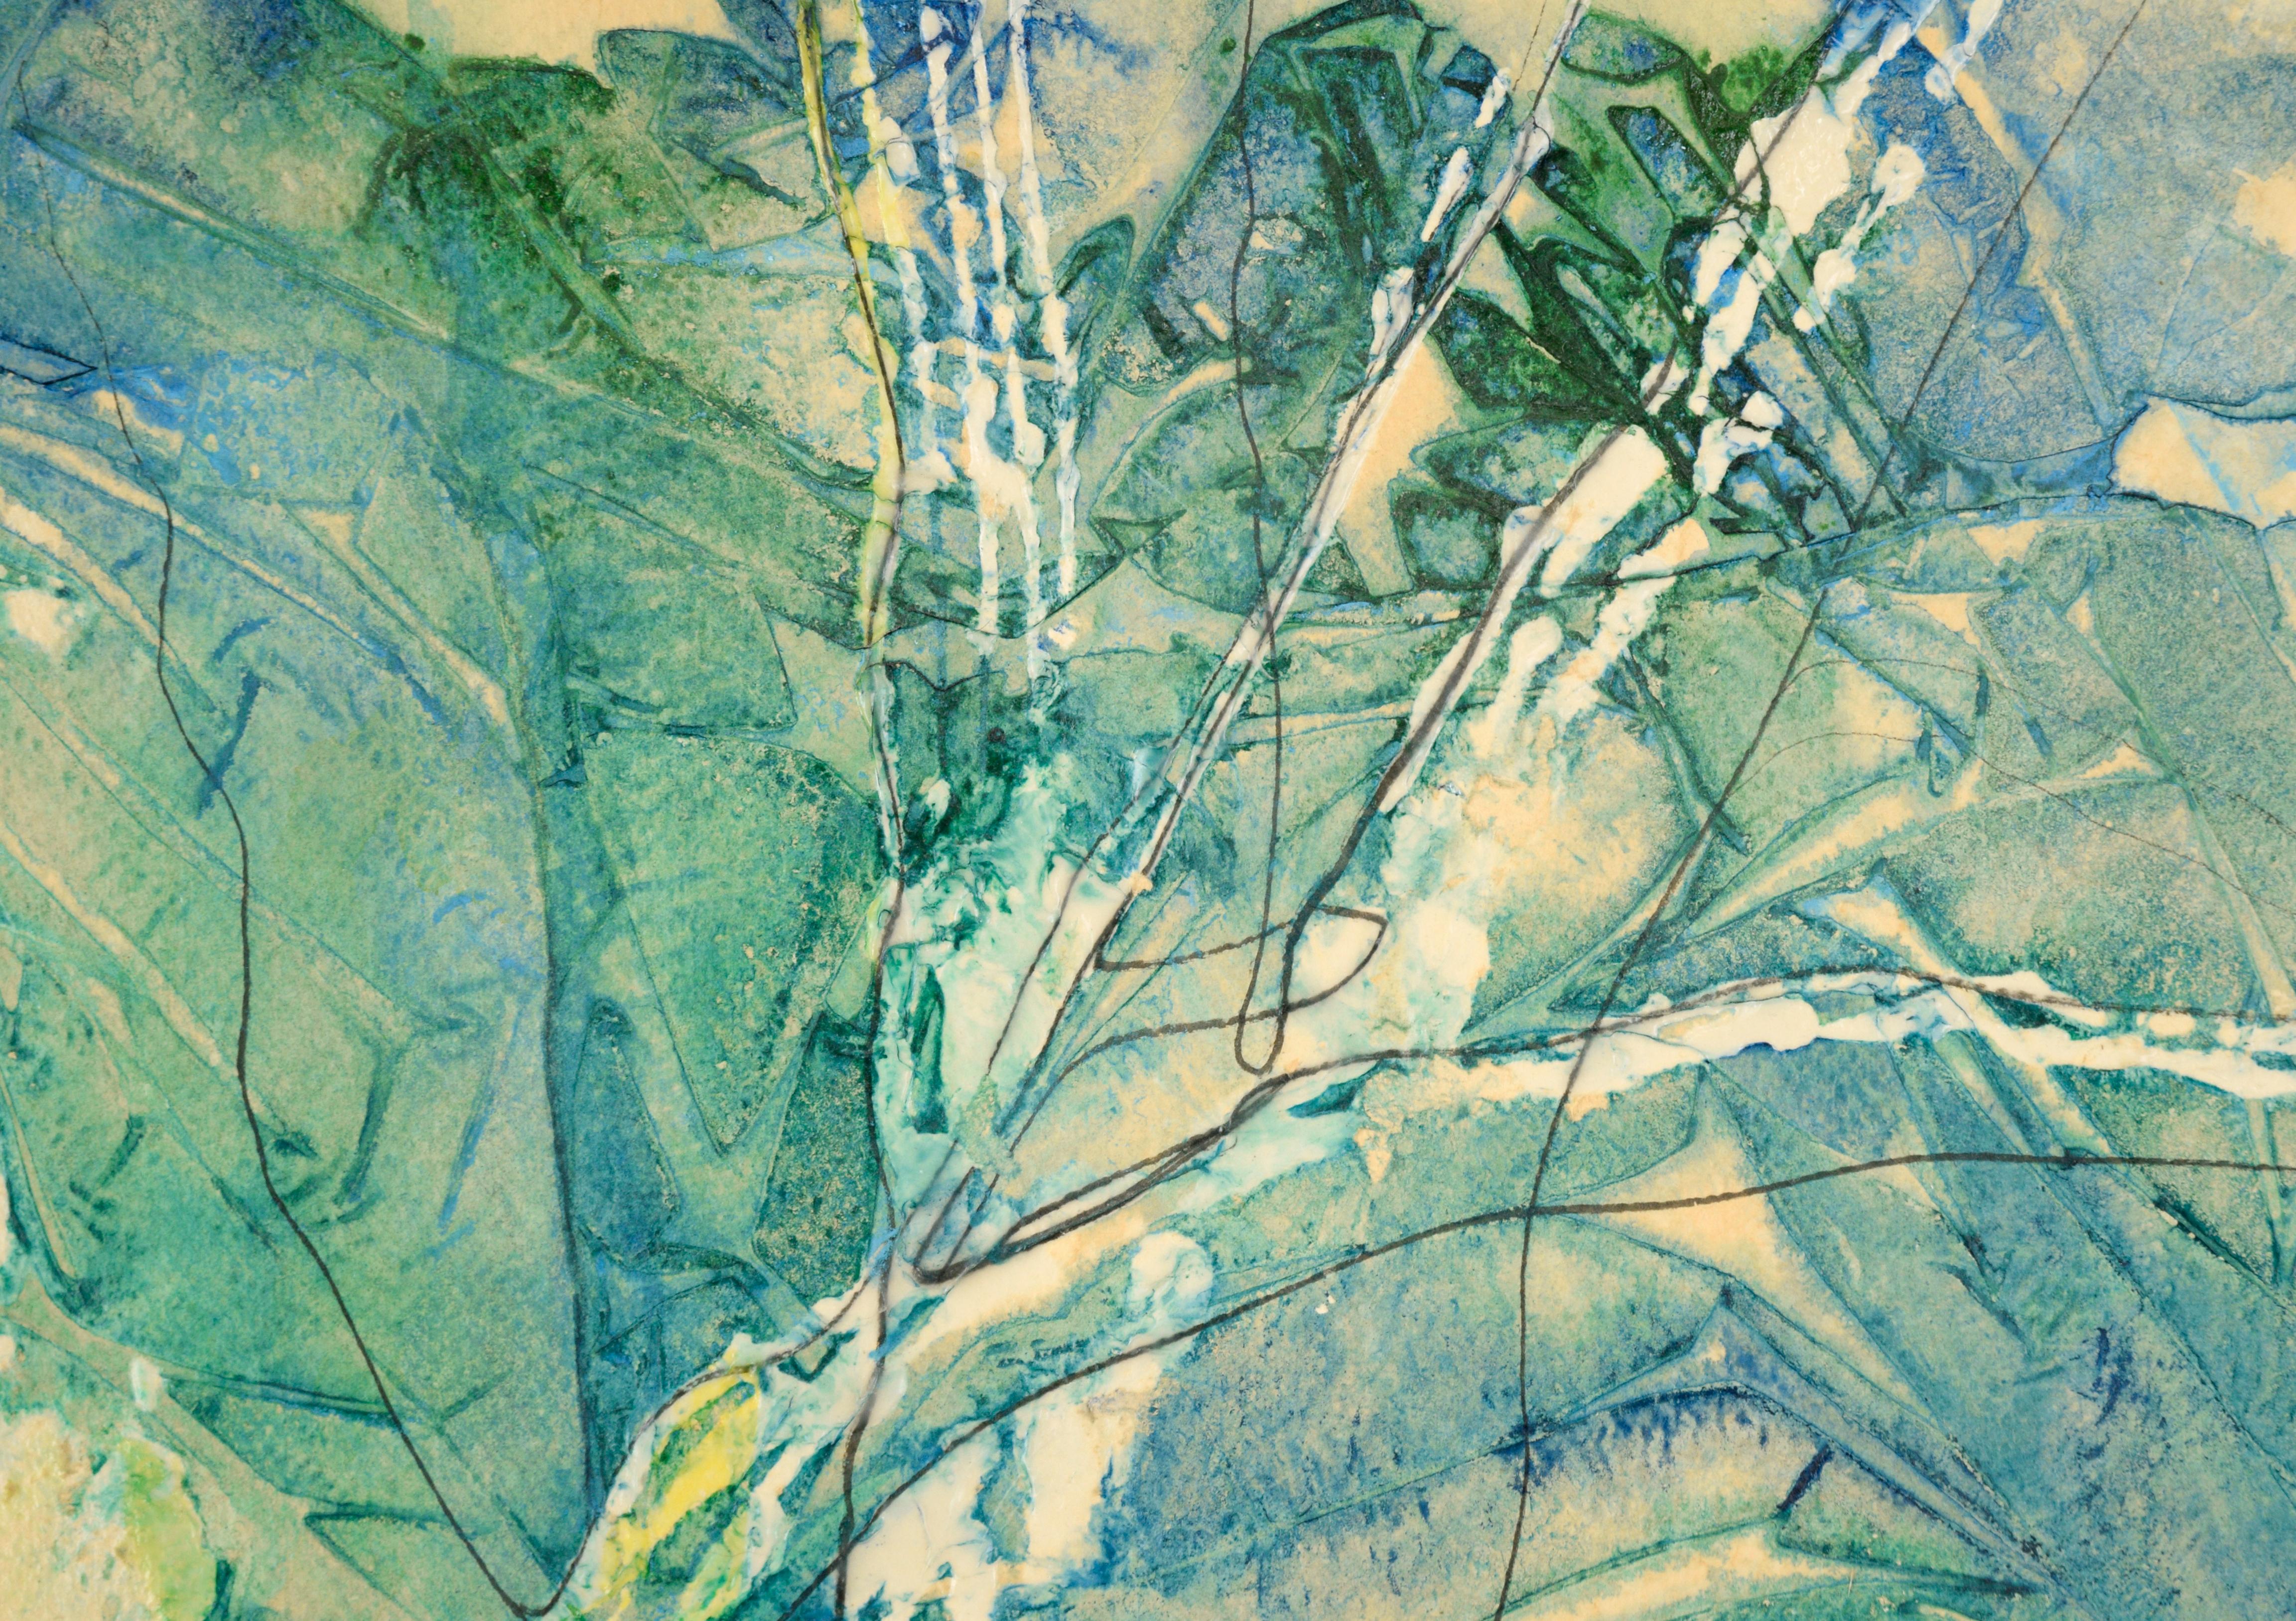 Composition expressionniste abstraite « Sycamores » en acrylique sur papier

Composition audacieuse et expressive d'Ellen Marie Jones (américaine, née en 1961). Plusieurs formes botaniques ressemblant à des arbres se chevauchent pour créer une